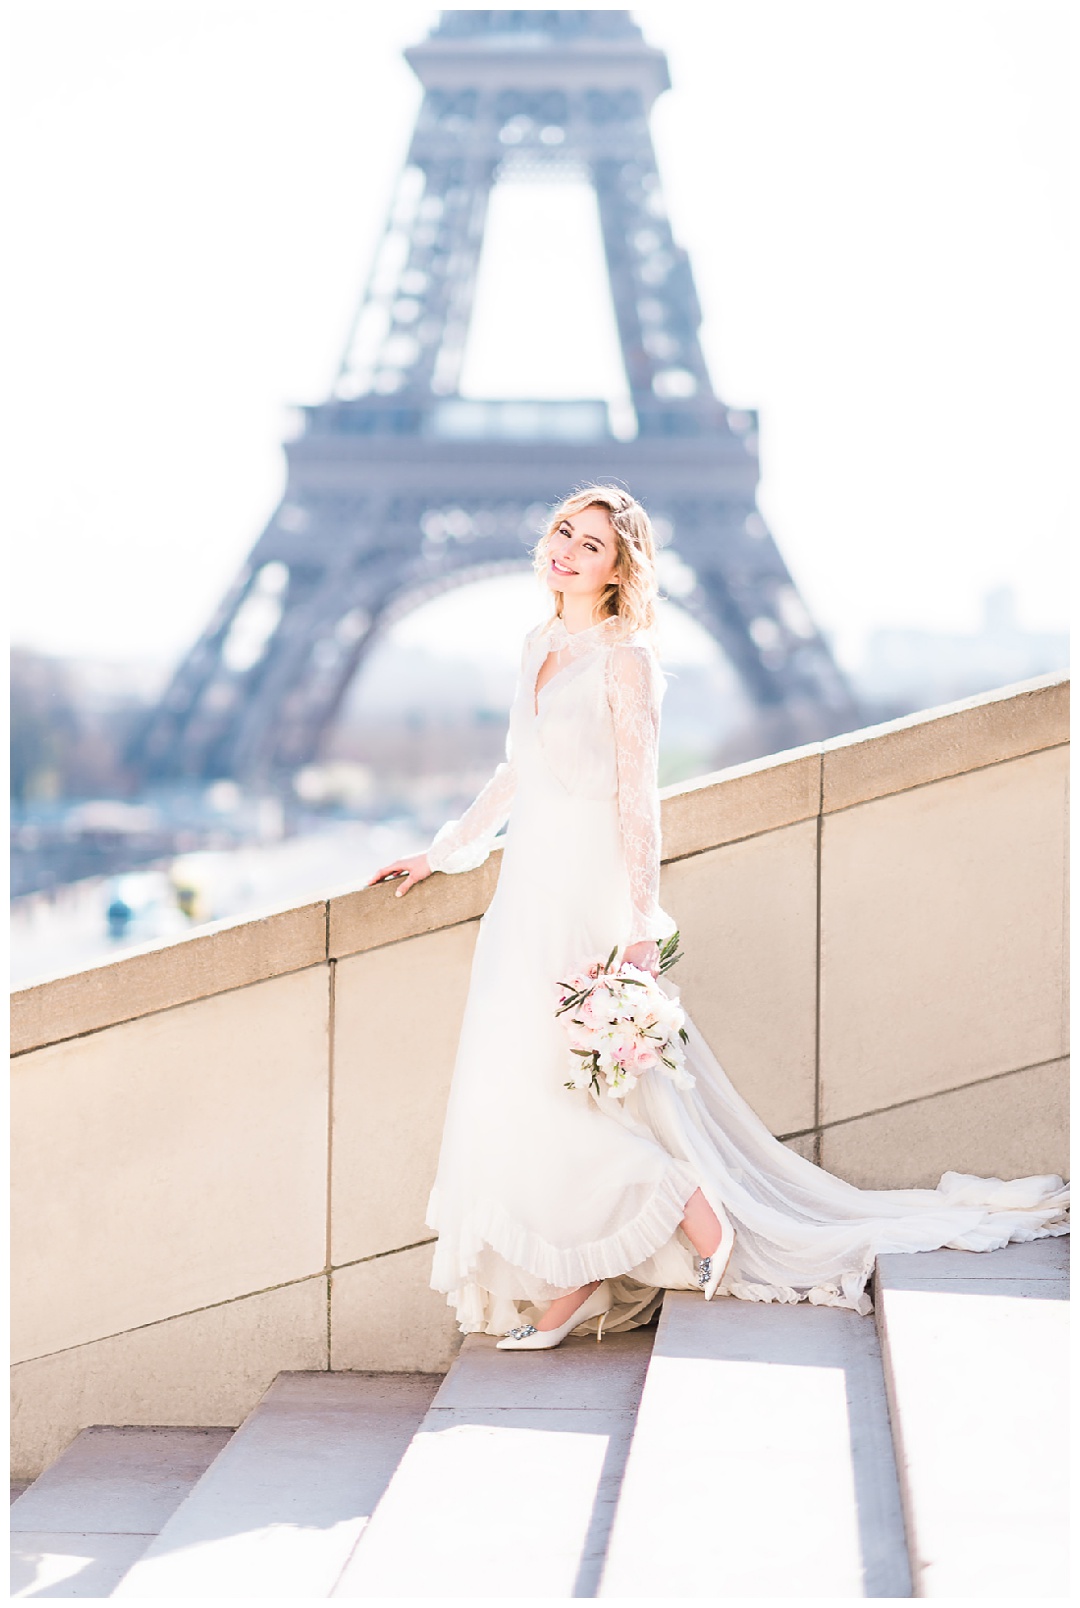 Roger Vivier Paris Wedding Campaign, Shangri la wedding, Paris wedding Photographer, roger vivier shoes bridal collection, Paris wedding, Paris elopement, fashion wedding photographer, 